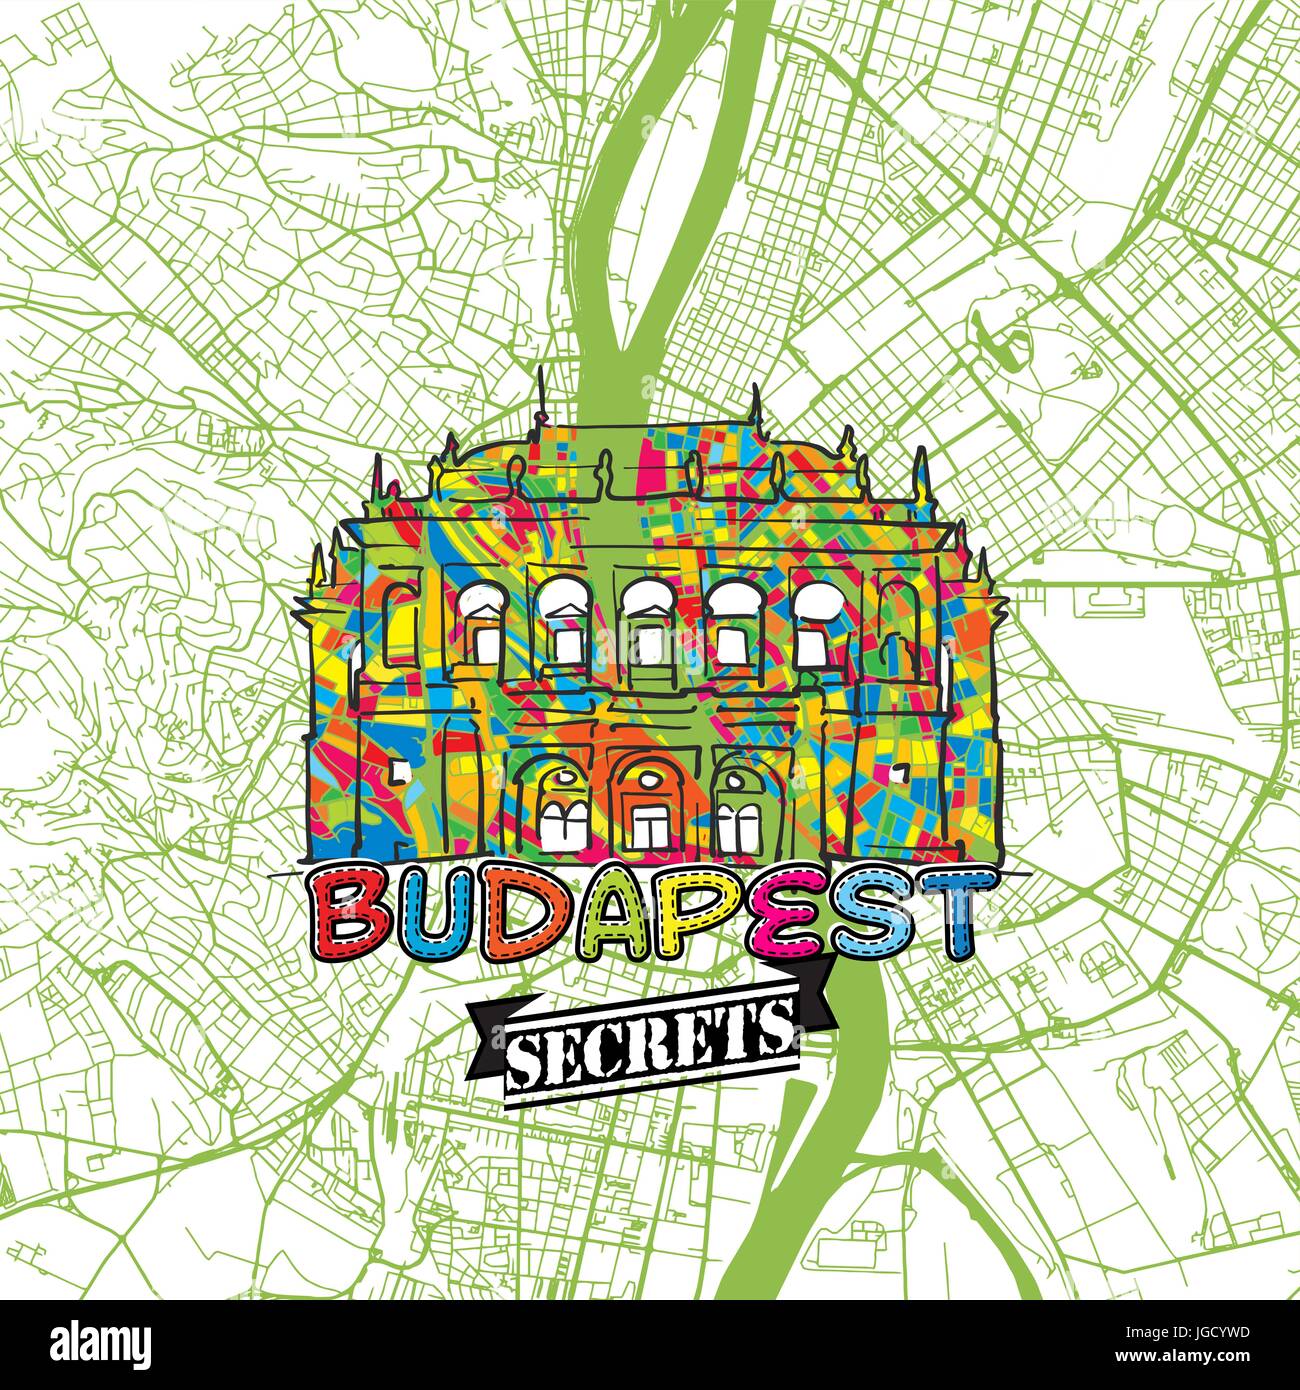 Budapest Reisen Geheimnisse Art Map für die Zuordnung von Experten und Reiseführer. Handgemachte Stadt Logo, Typo-Abzeichen und Hand gezeichnete Vektor-Bild an der Spitze sind gruppiert eine Stock Vektor